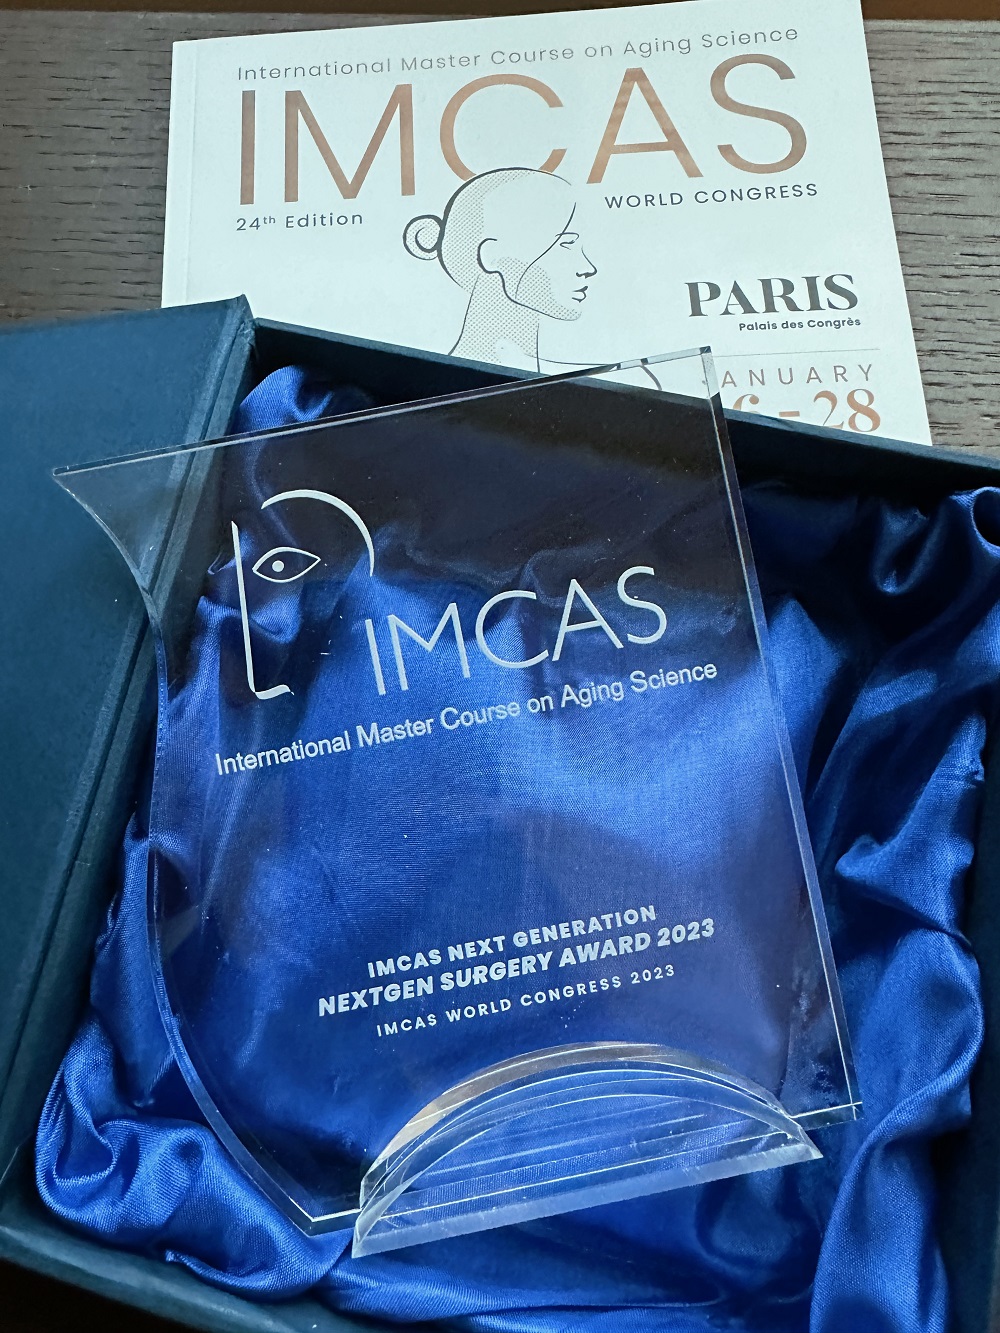 El Dr. Íñigo Aragón recibe el premio Nextgen Surgery Award en el IMCAS World Congress 2023